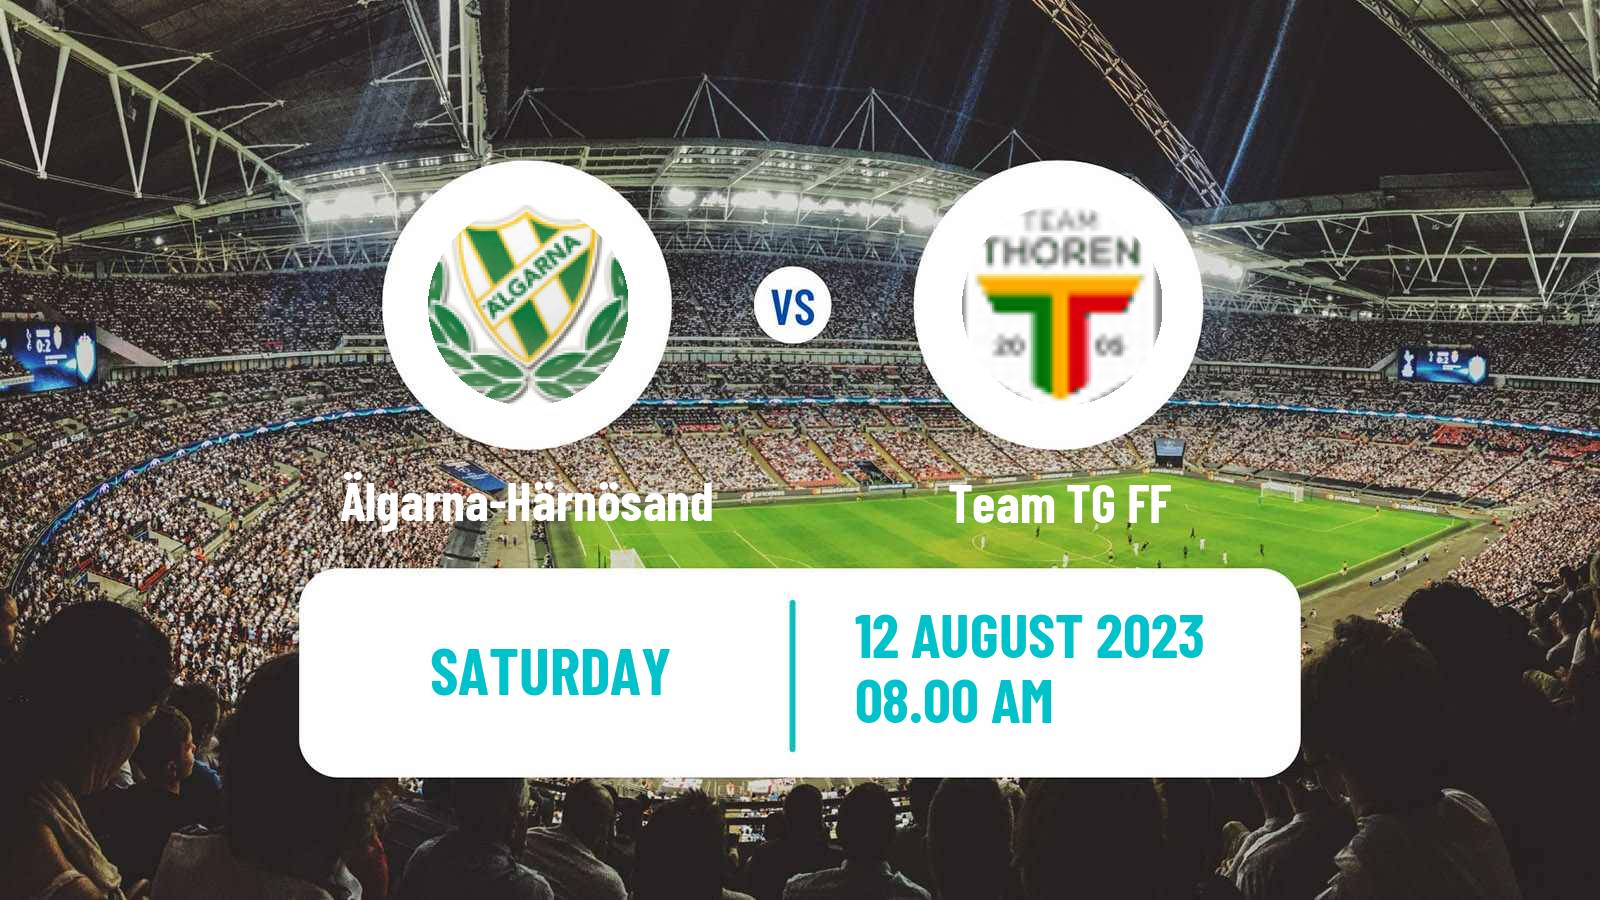 Soccer Swedish Division 2 - Norrland Älgarna-Härnösand - Team TG